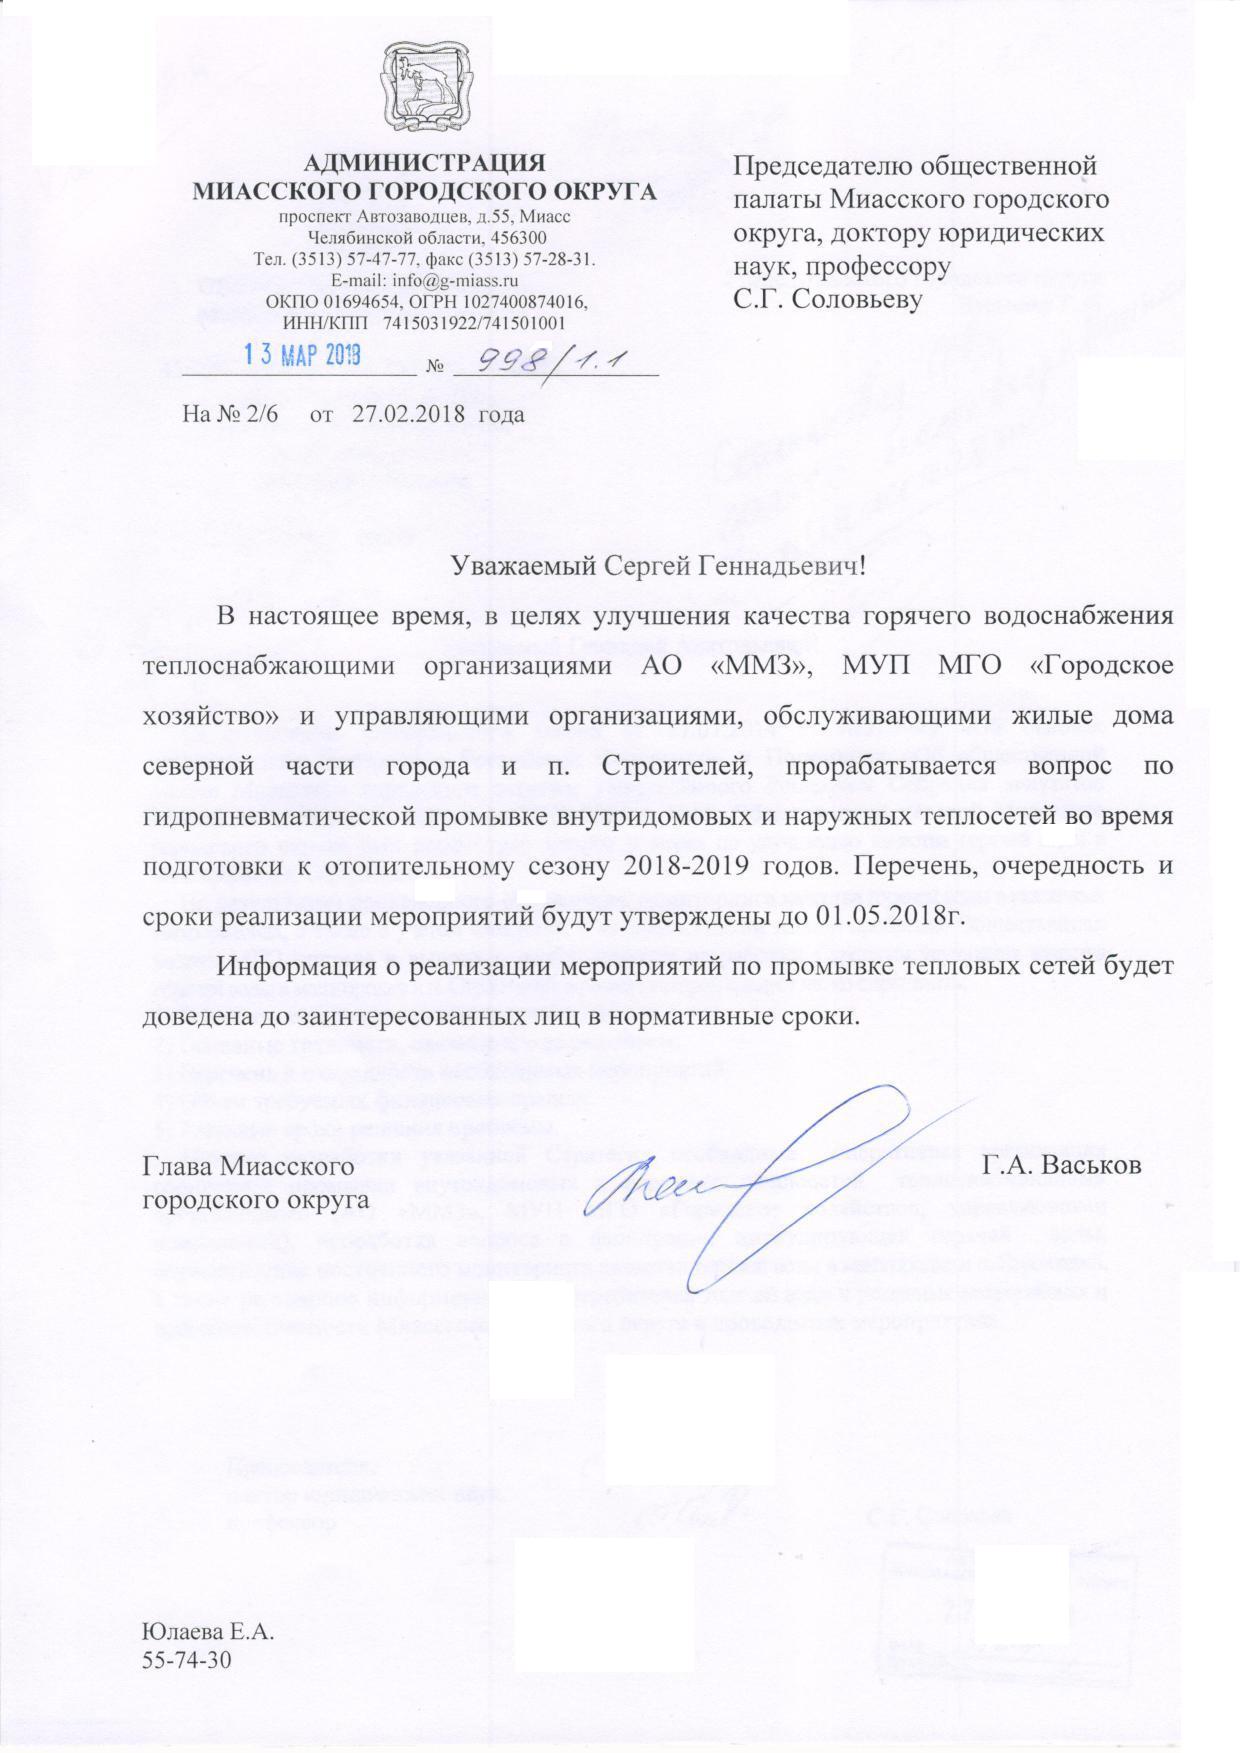 Ответ главы Миасского городского округа Г.А. Васькова